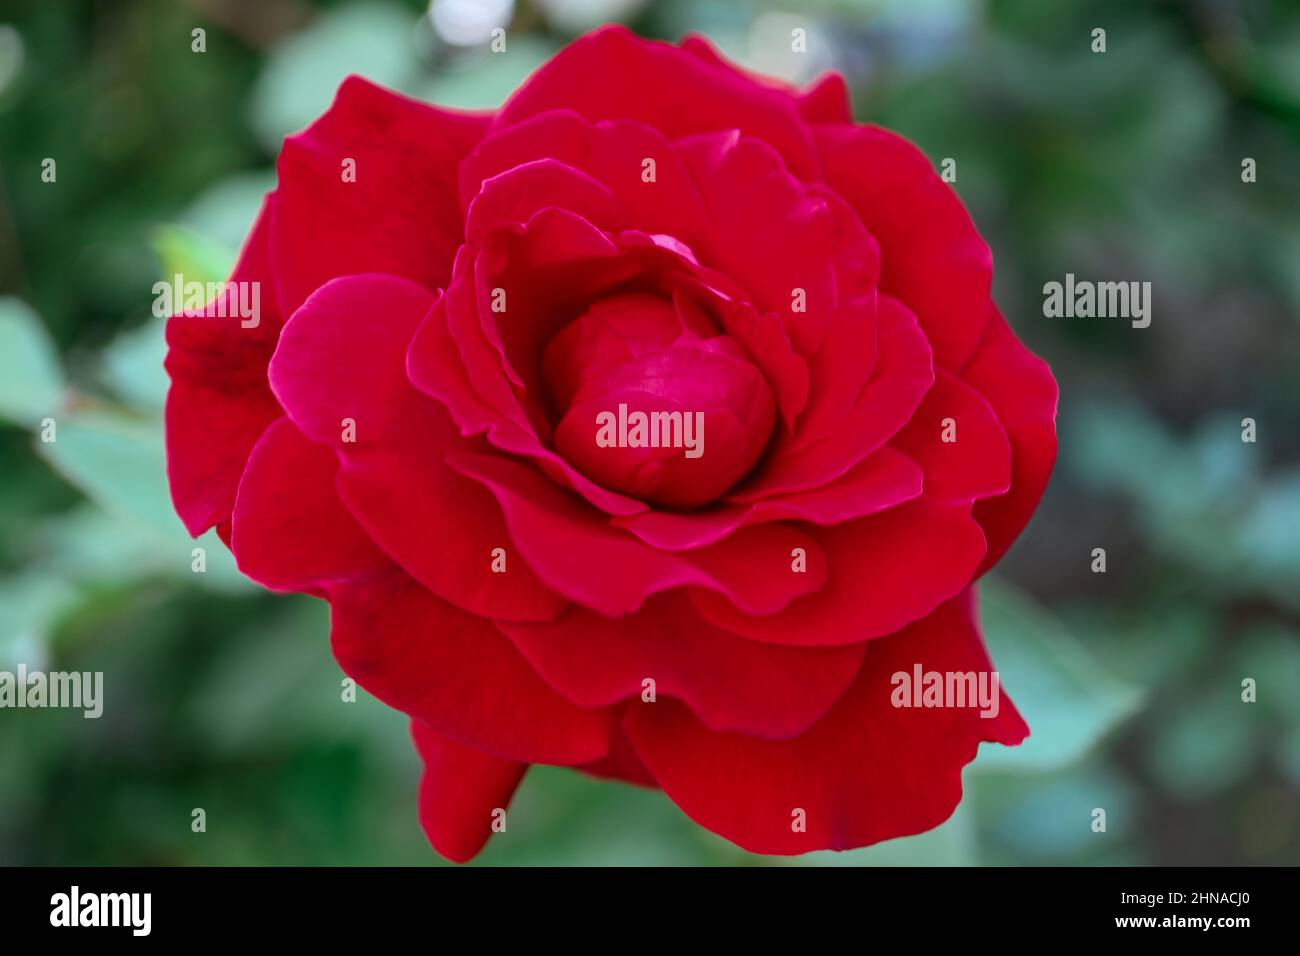 Rose rouge avec des pétales délicats dans le jardin, rose en fleurs avec des pétales rouges et des feuilles vertes, macro de la tête de fleur, beauté dans la nature, photo florale Banque D'Images